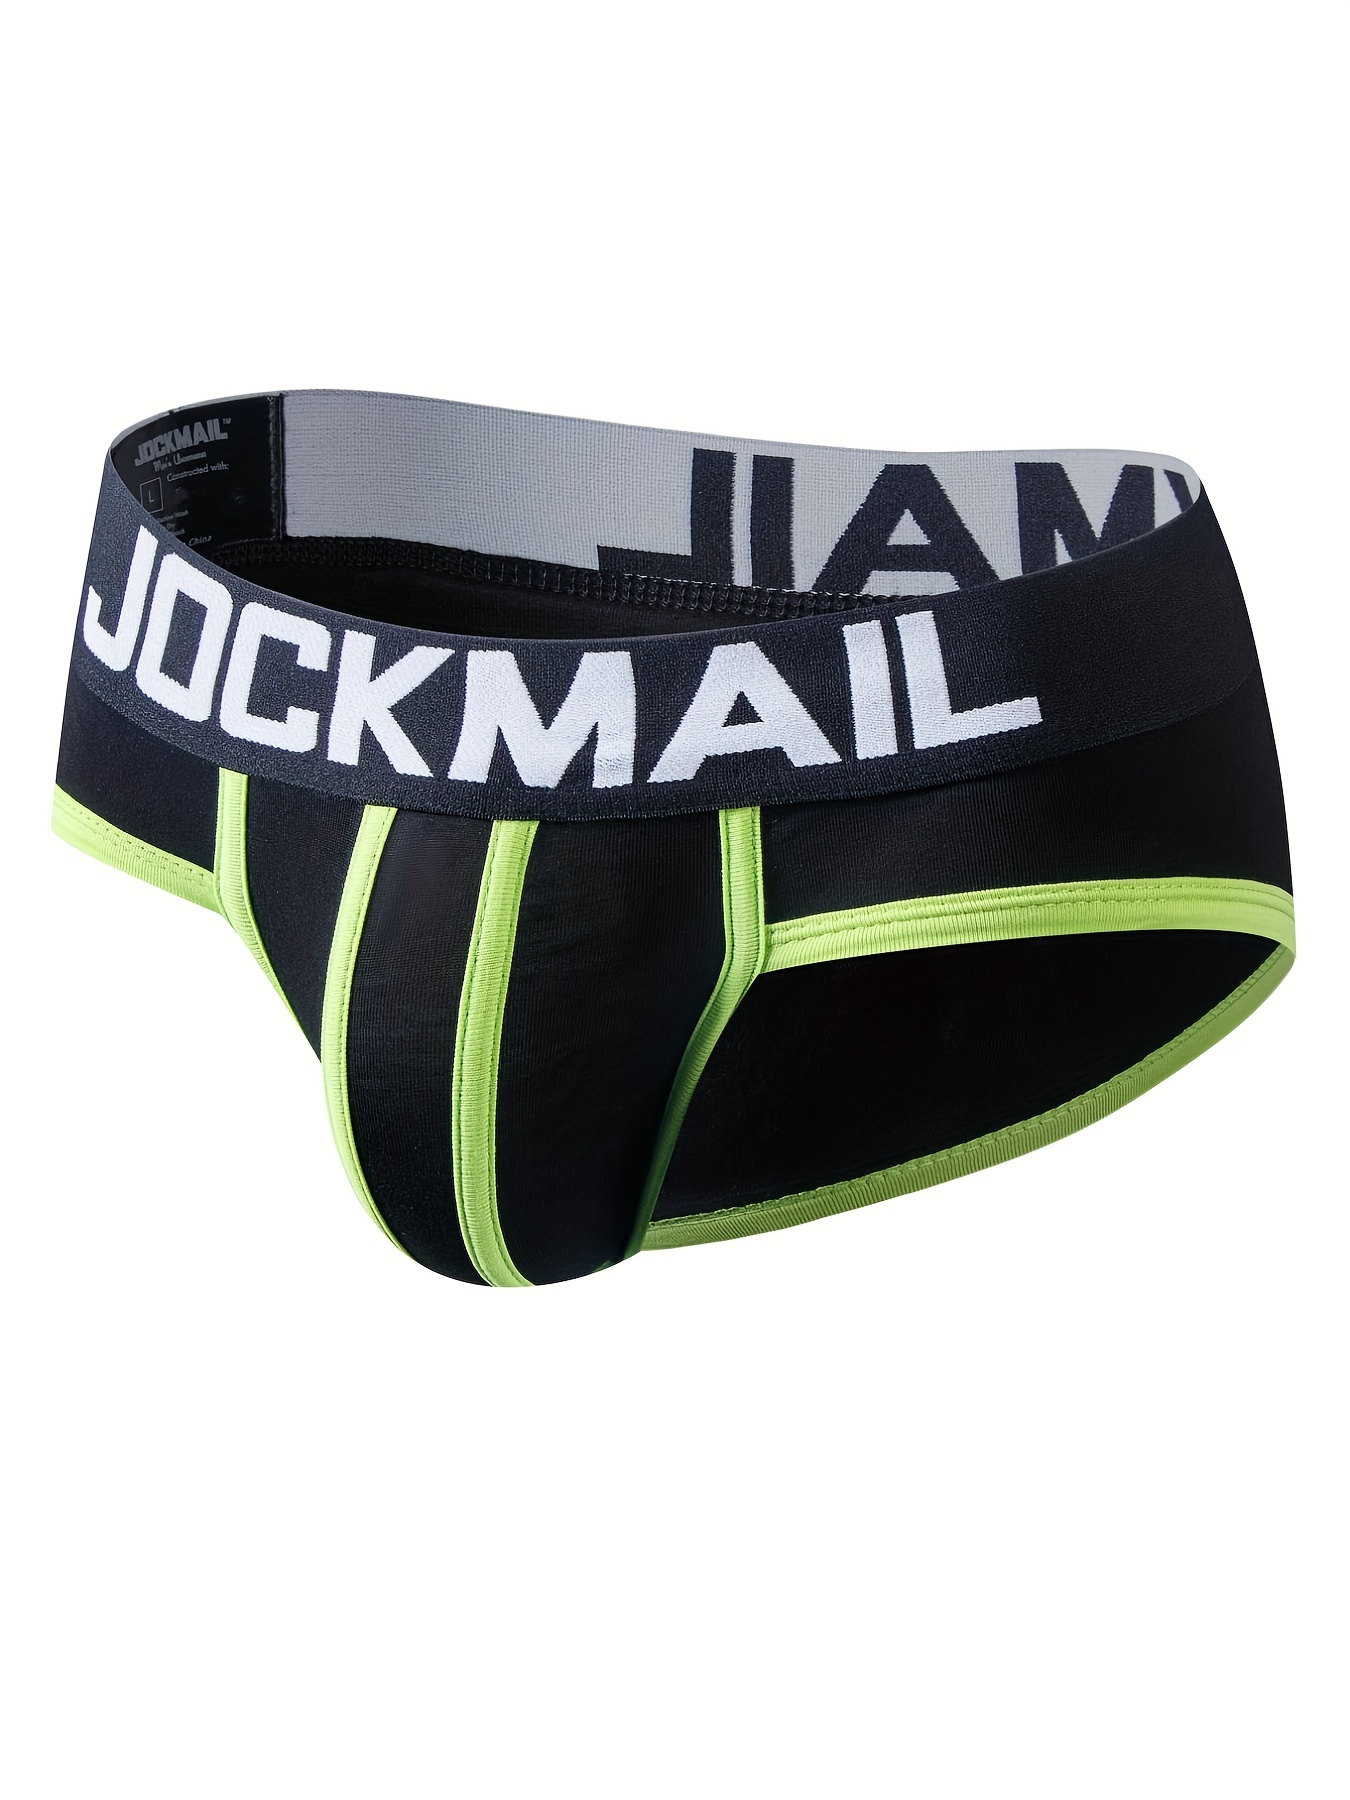 JOCKMAIL 3PCS/Packs Men Underwear Briefs Cotton Mens Briefs Low